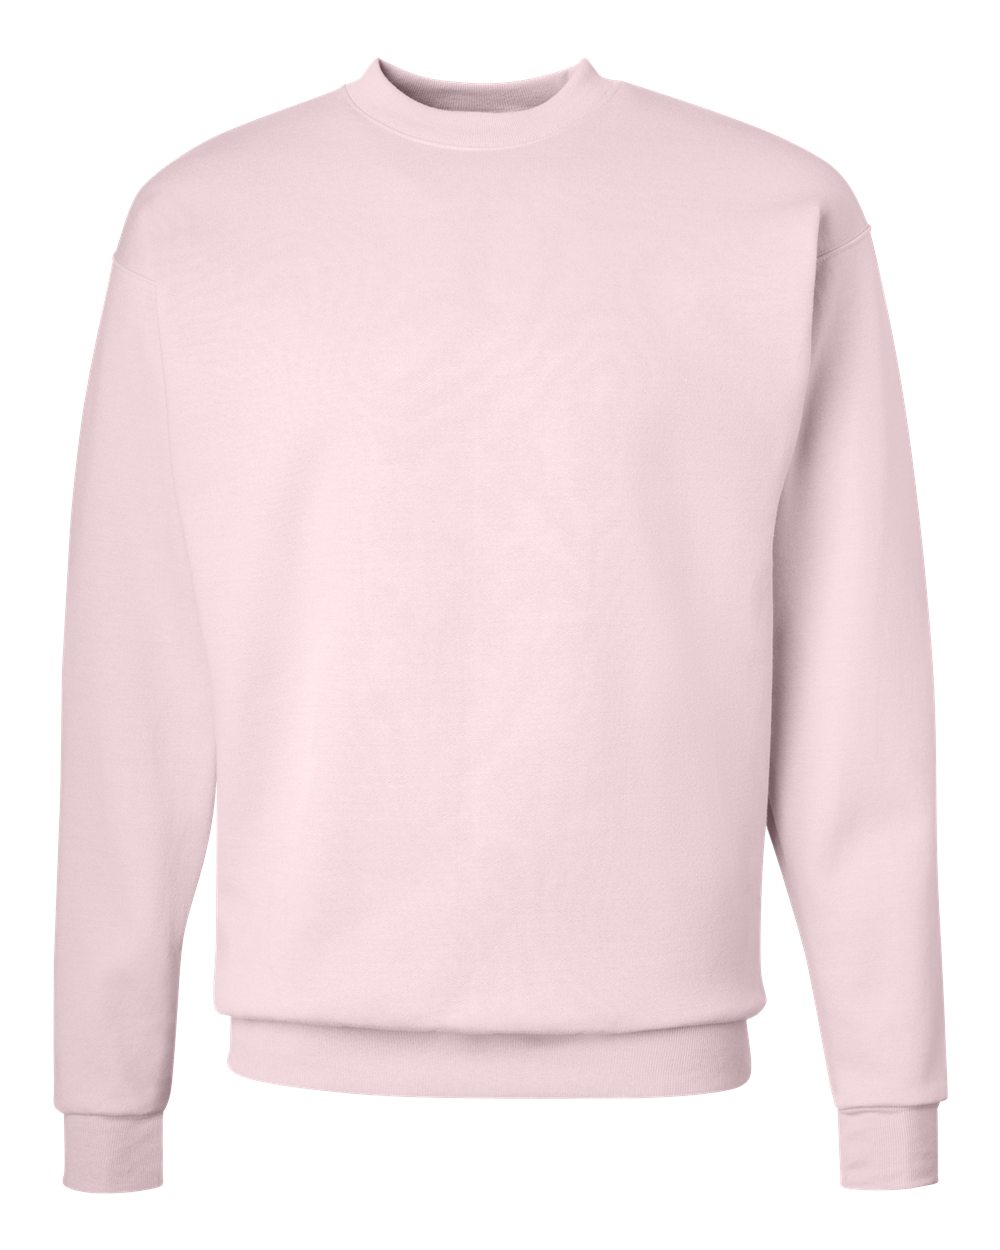 hanes pink sweatshirt